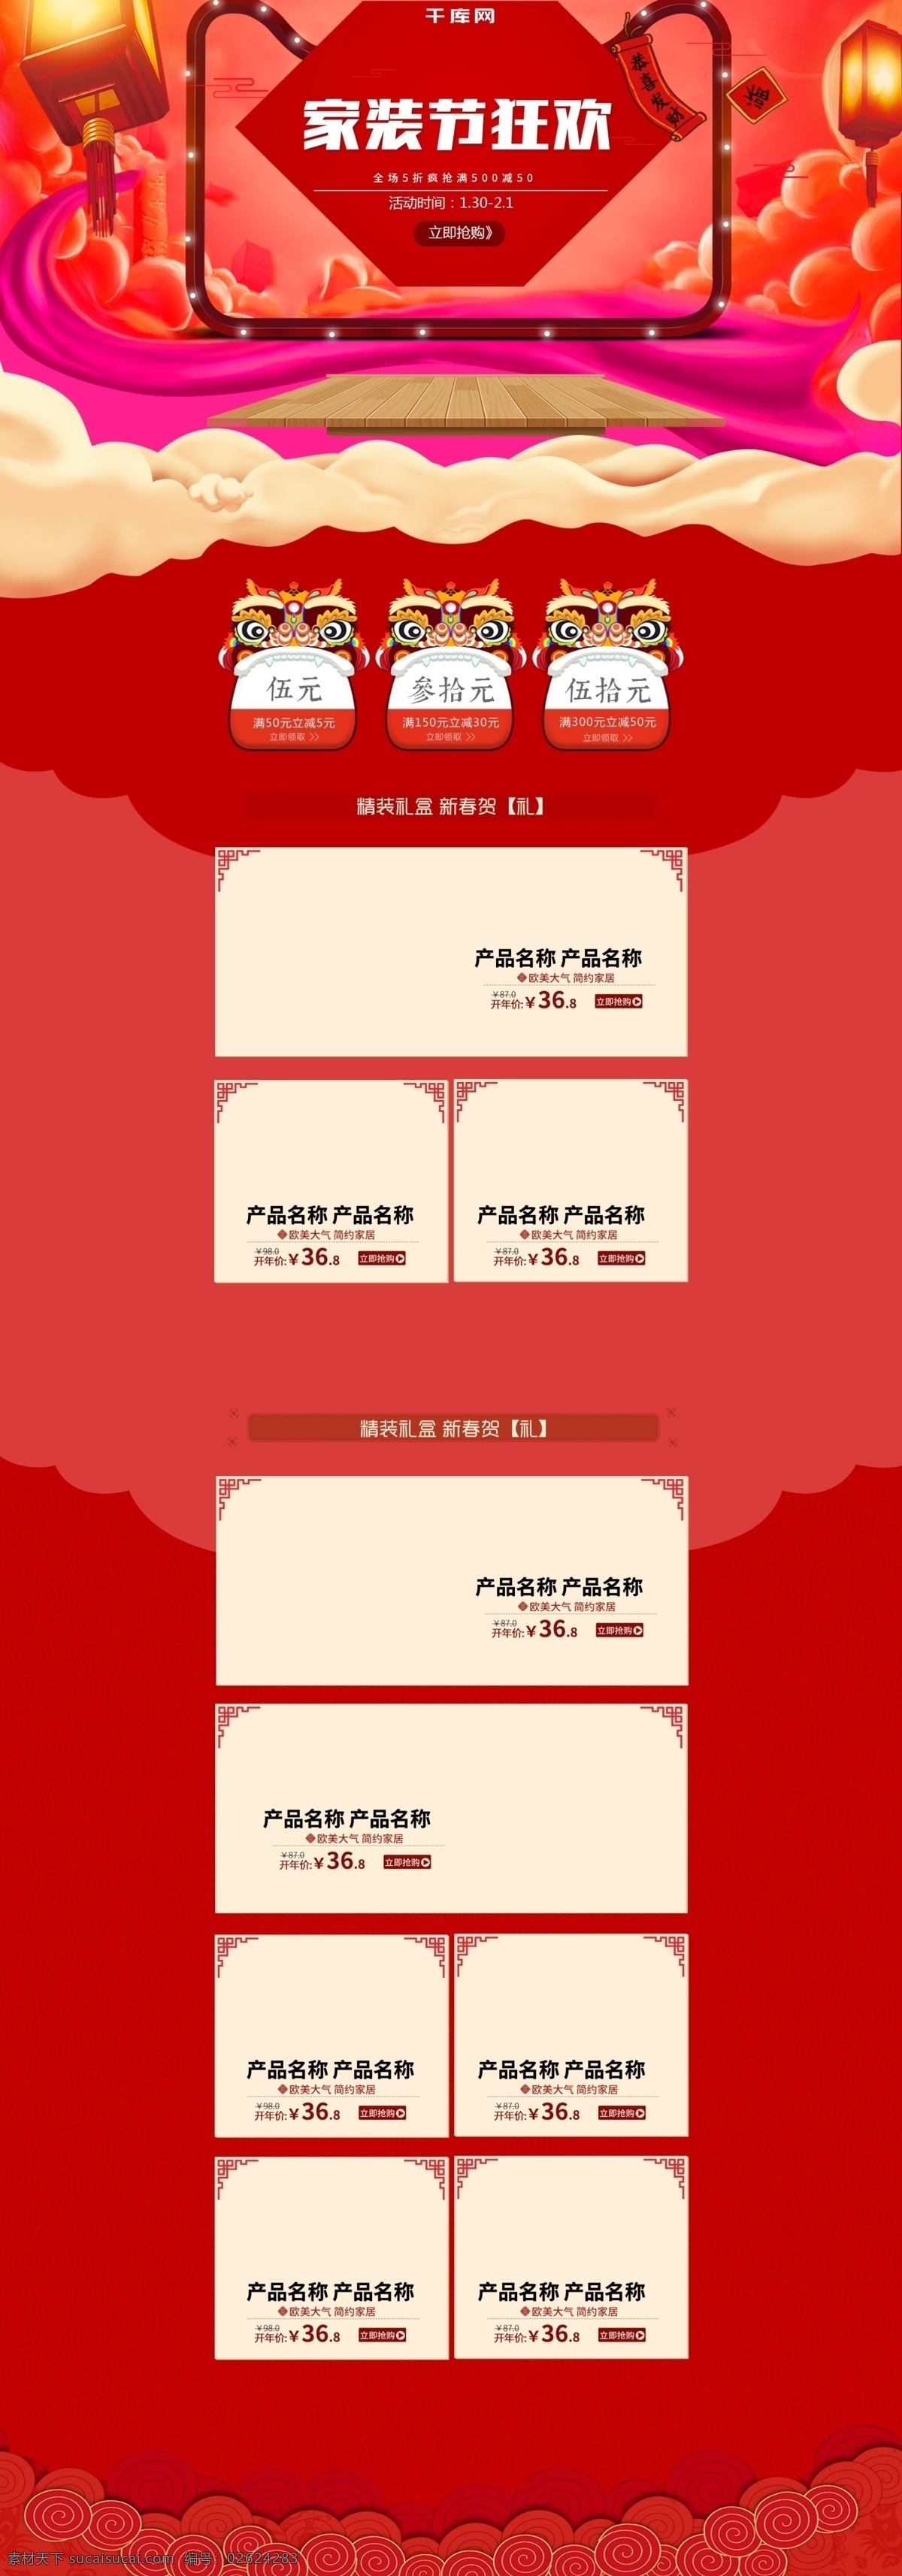 淘宝 红色 中 国风 新年 家装 节 家居 首页 中国风 家装节